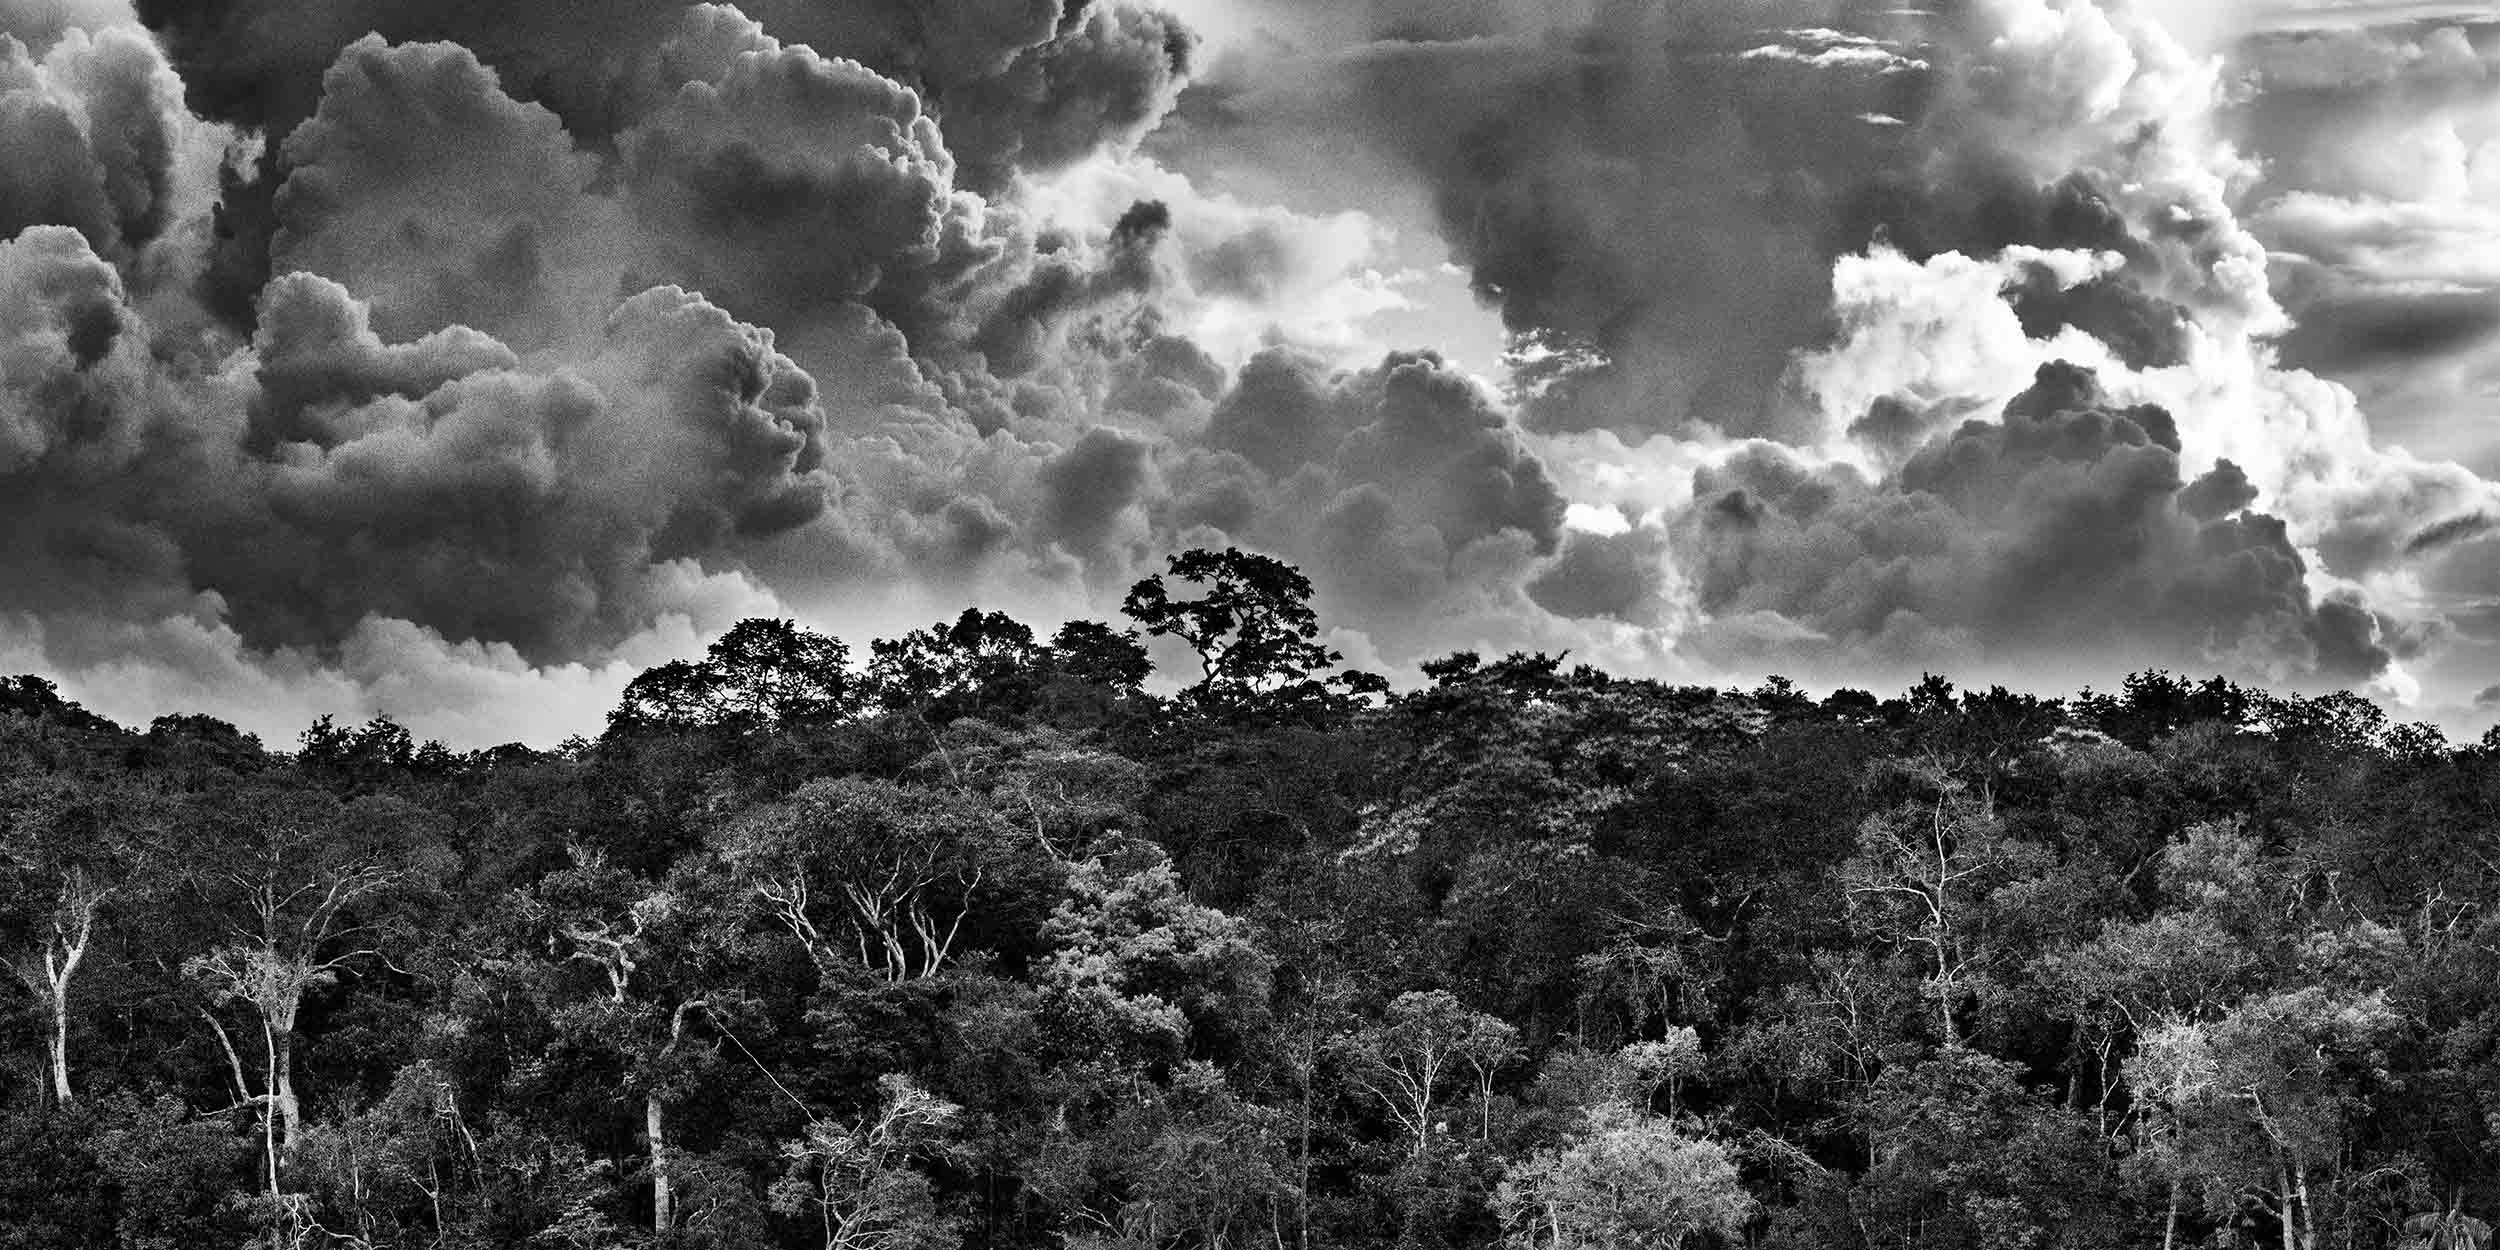 Culture & écologie: l’Amazonie vue par Sebastião Salgado